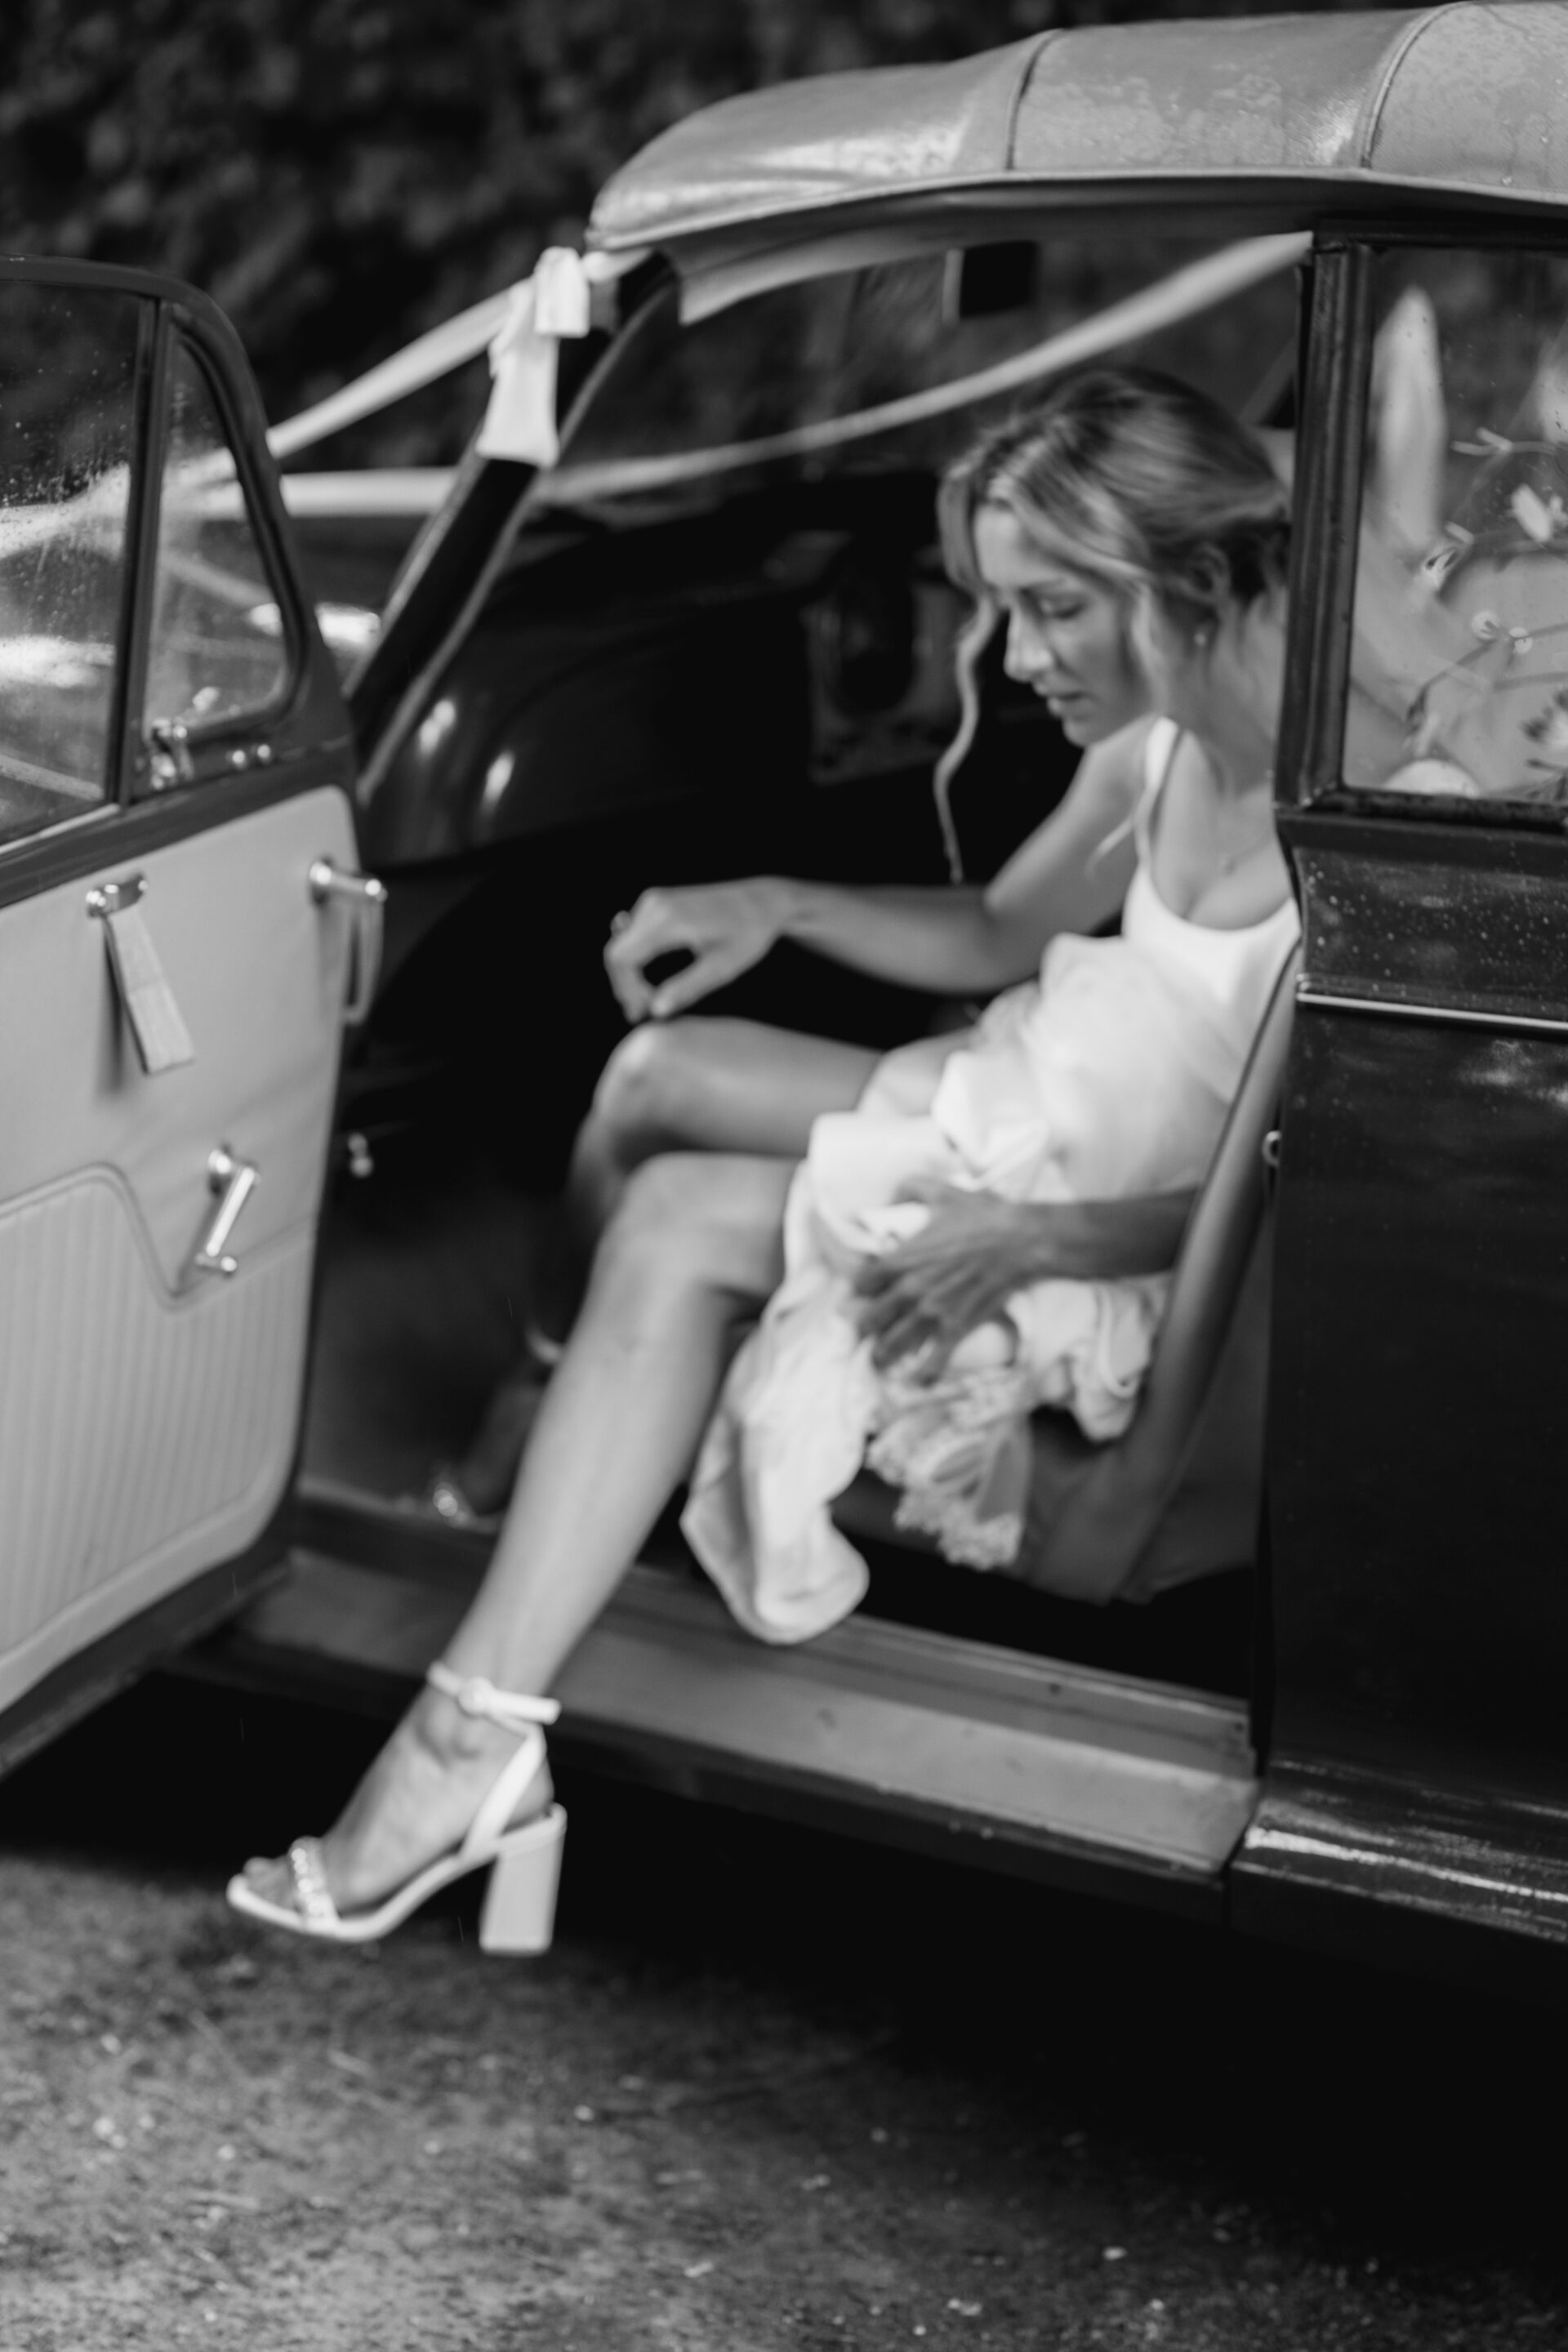 The bride exits the vintage wedding car